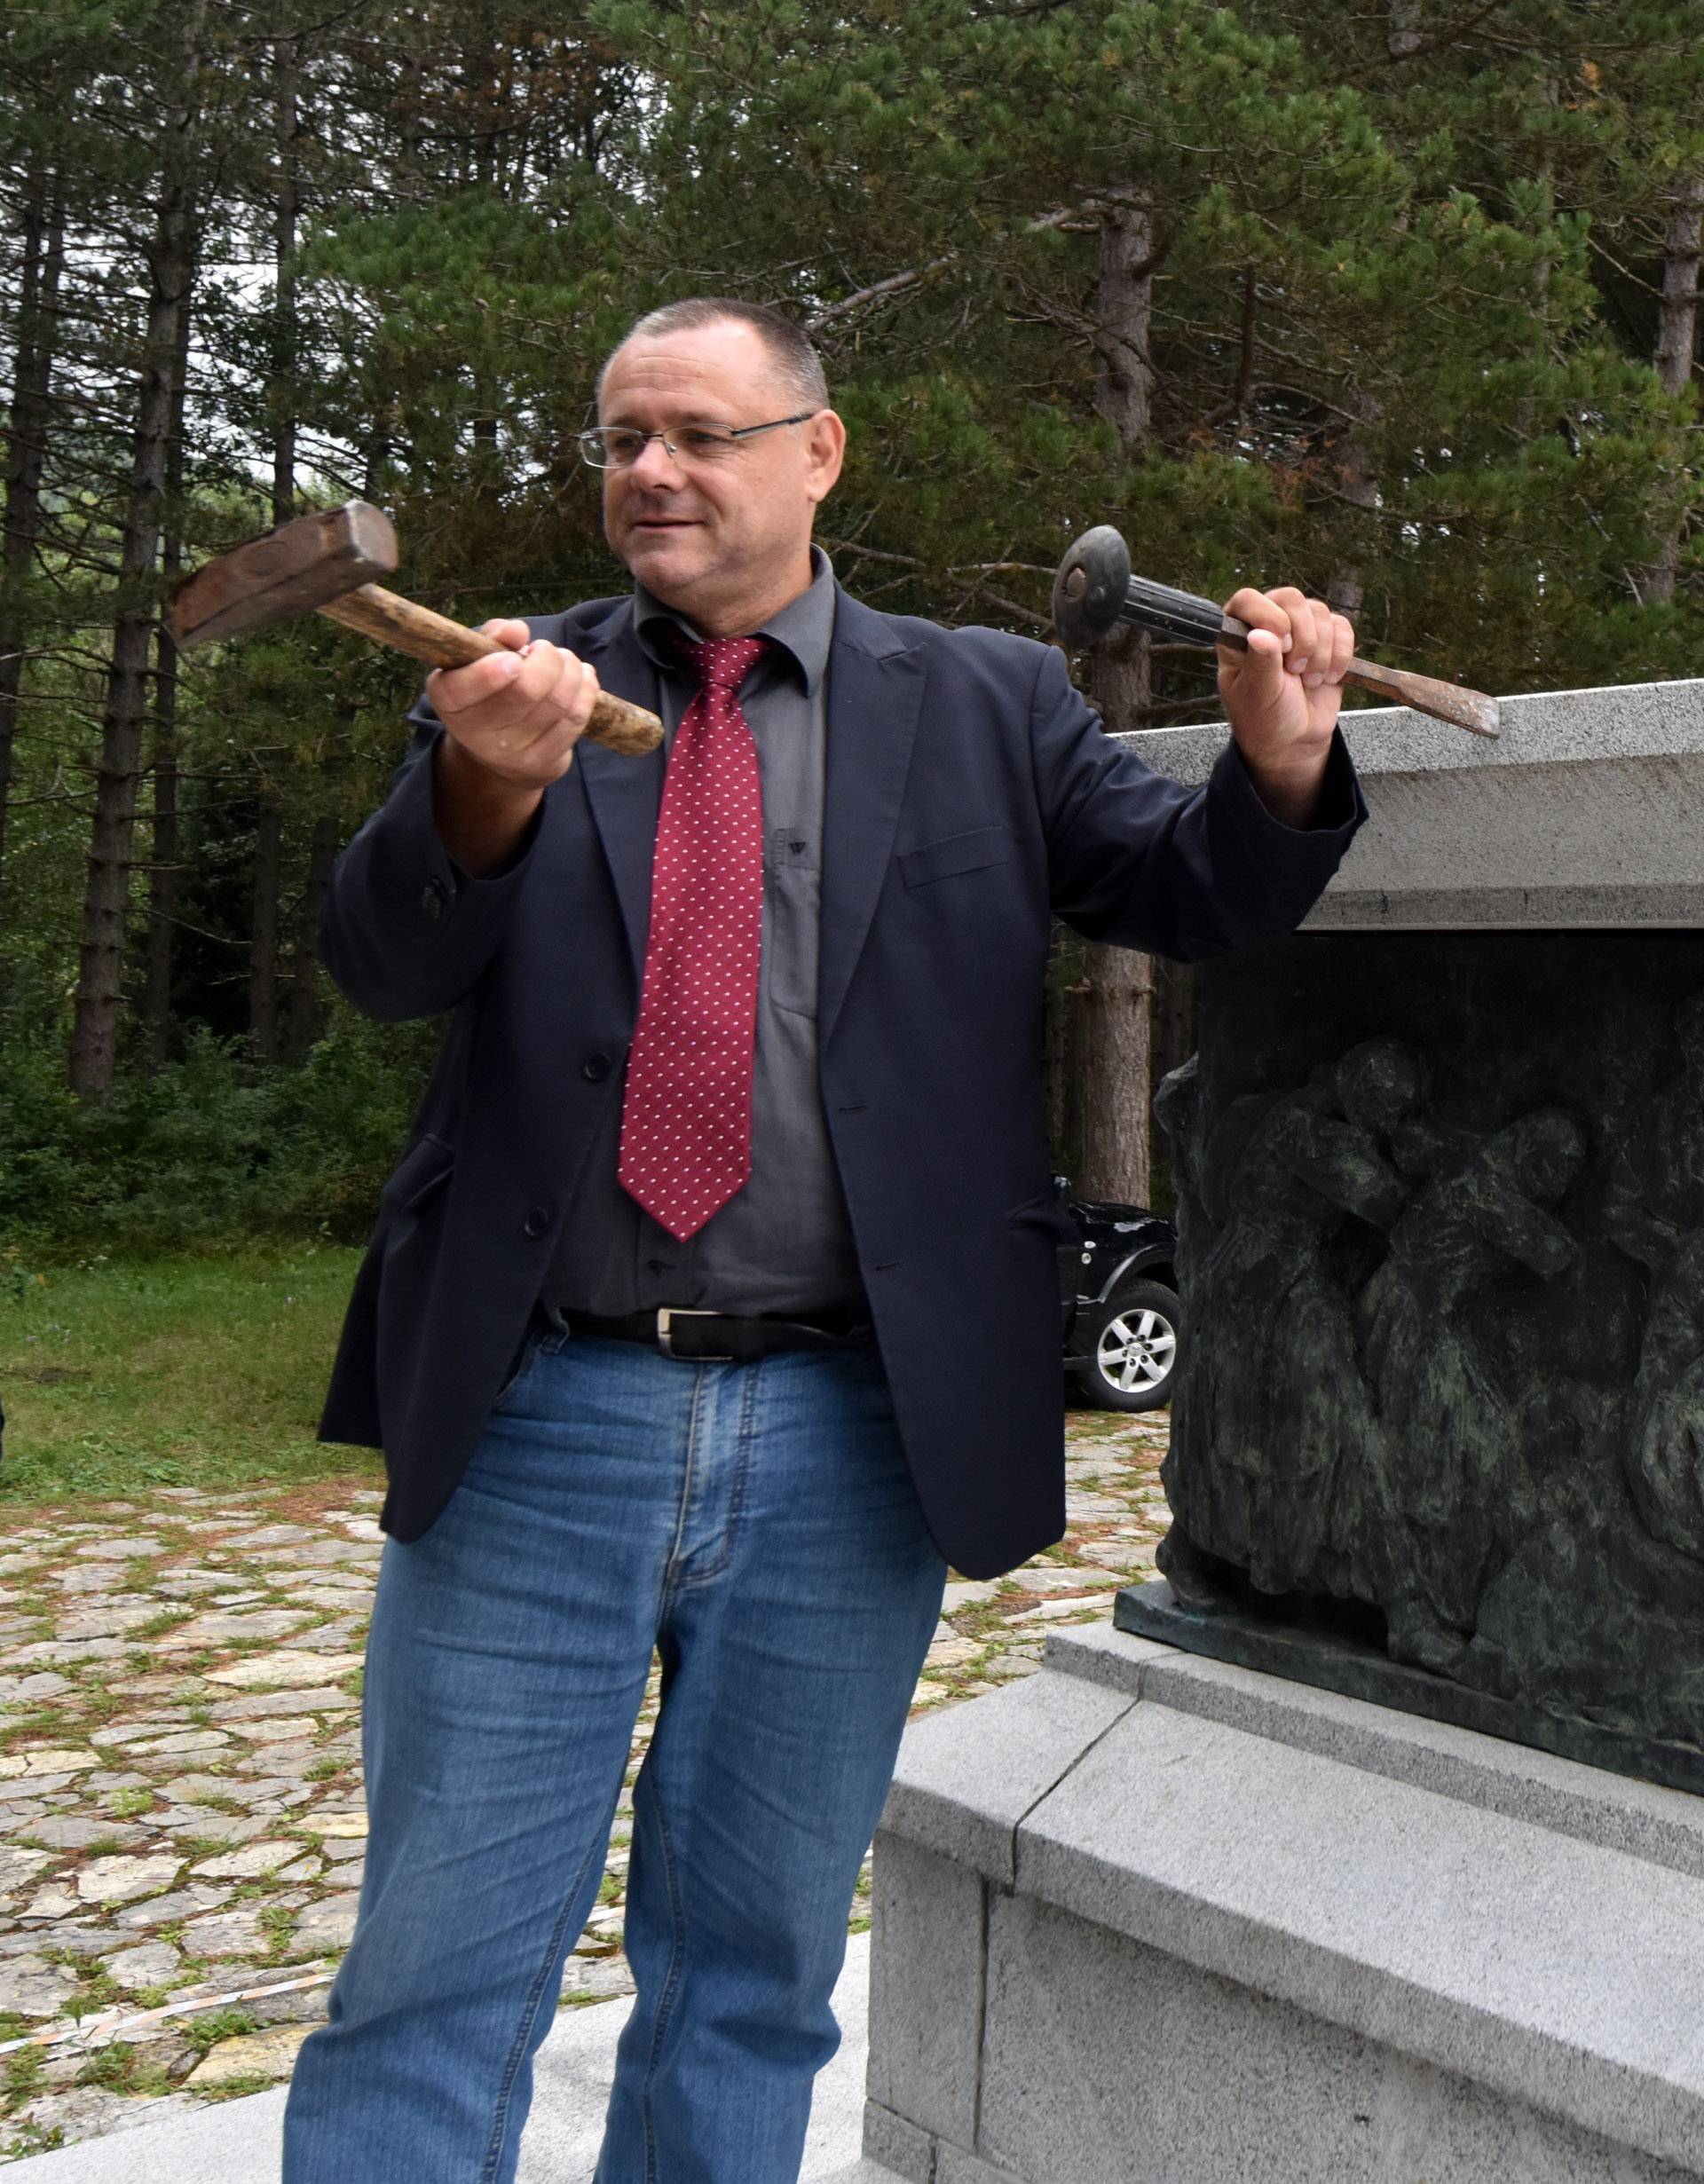 Održao konferenciju: Keleminec traži rušenje spomenika u Srbu